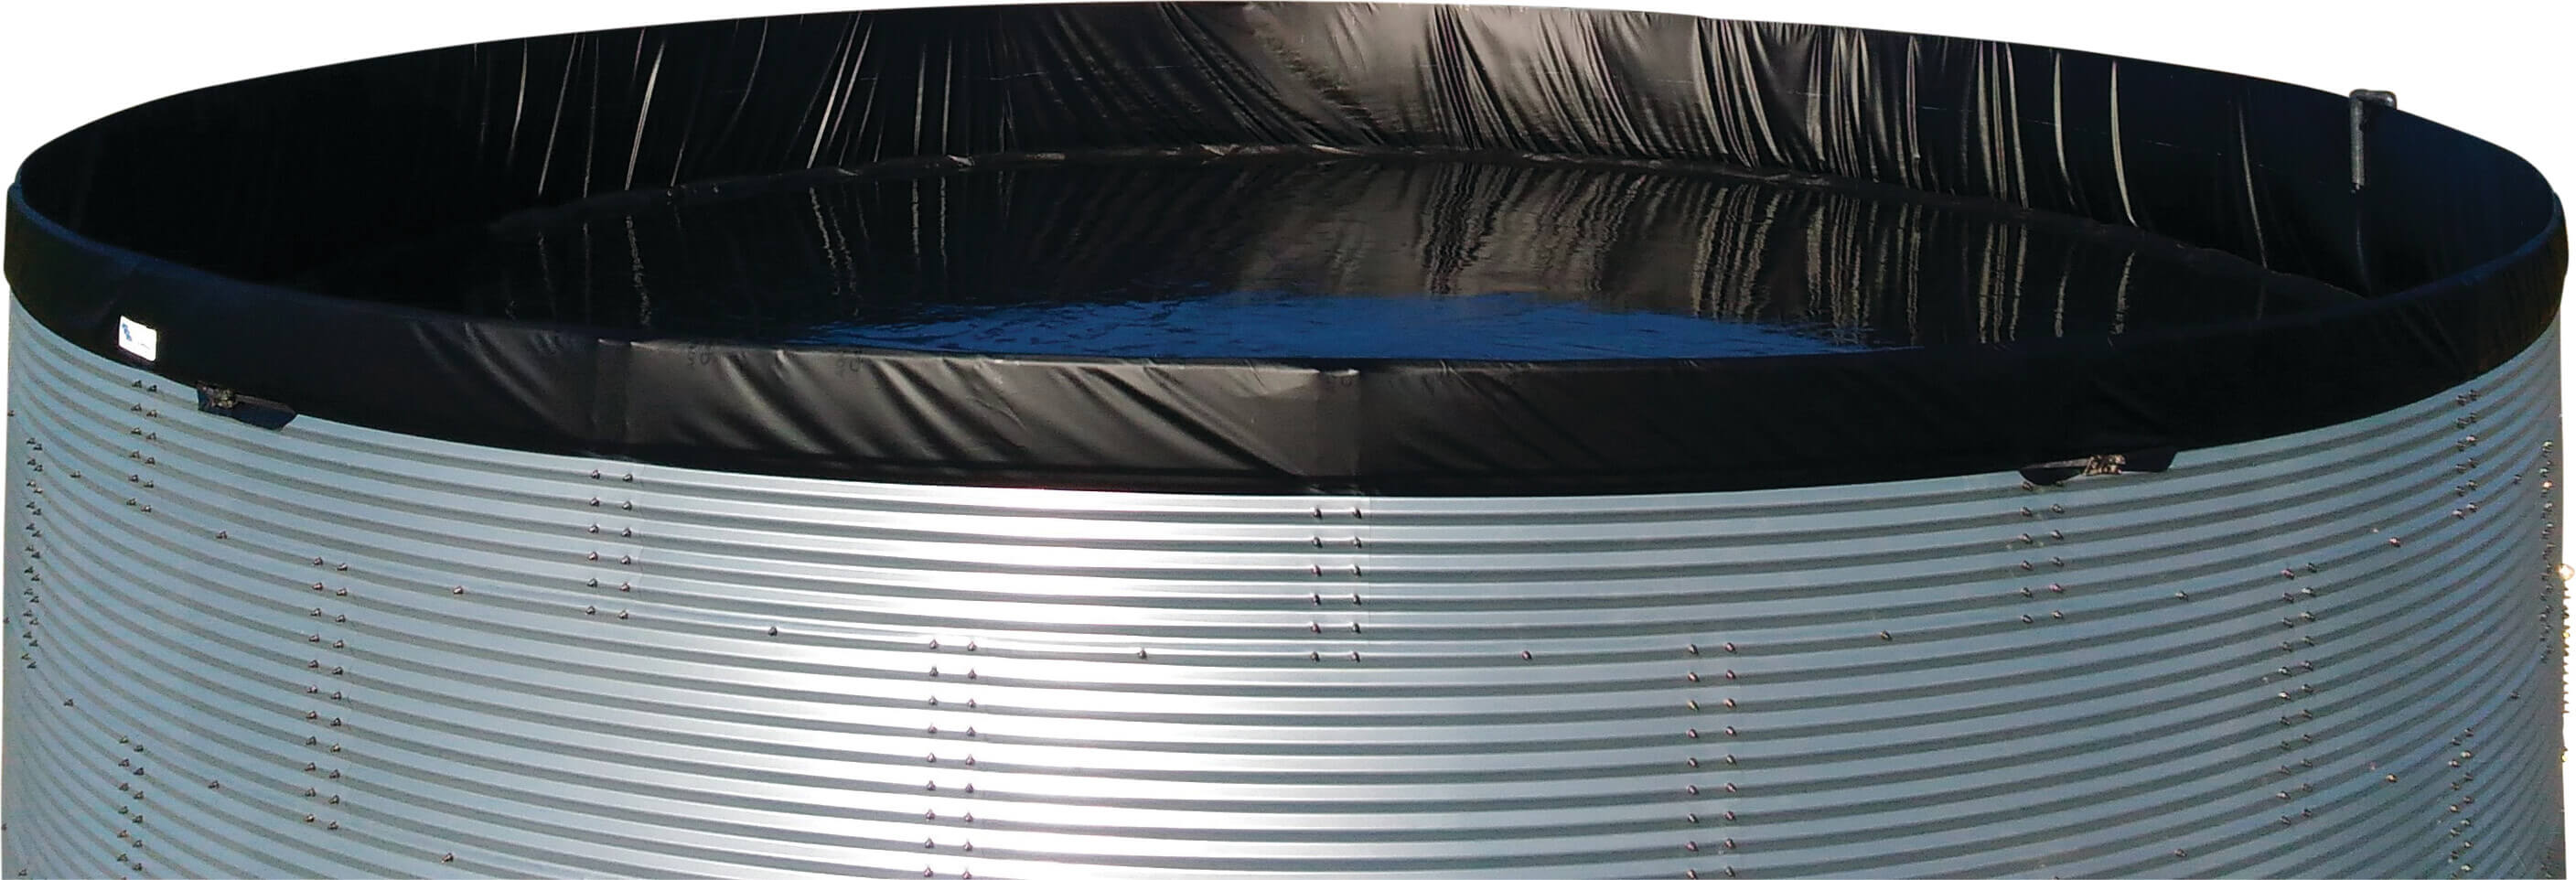 Watertank staal gegalvaniseerd 5000ltr type WSW 2.01 x 1.59m